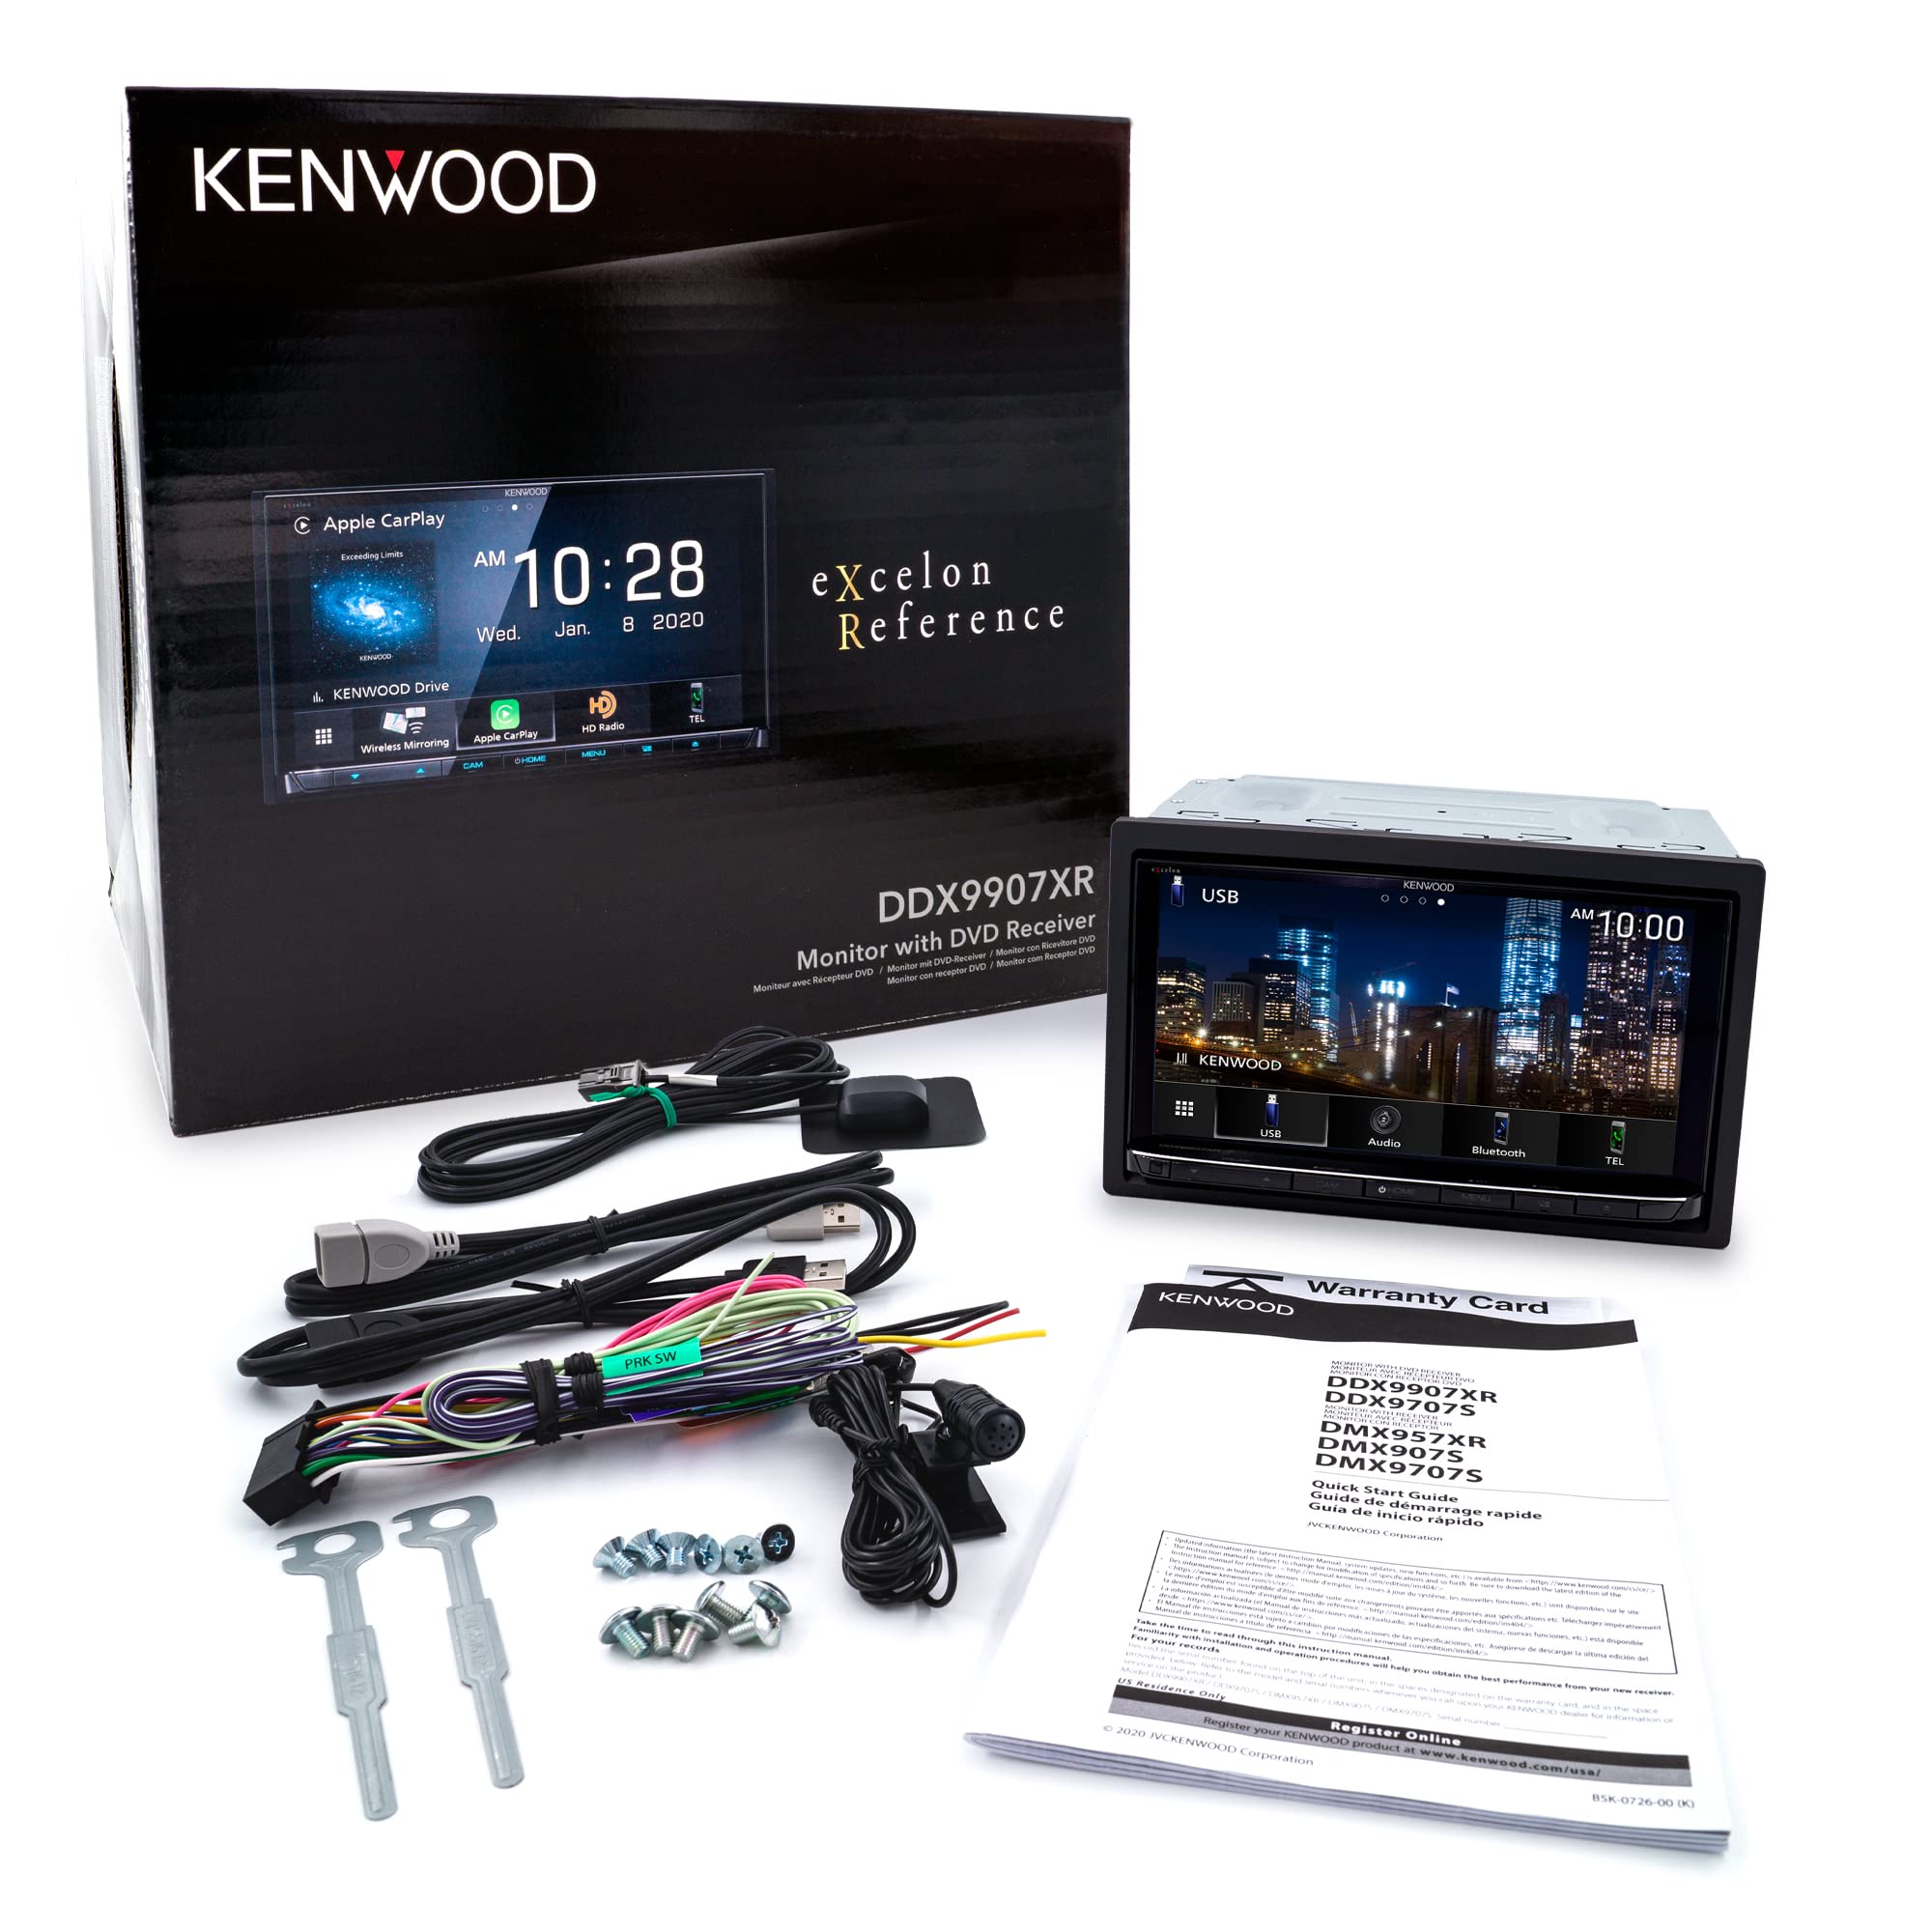 Kenwood DDX9907XR 6.8